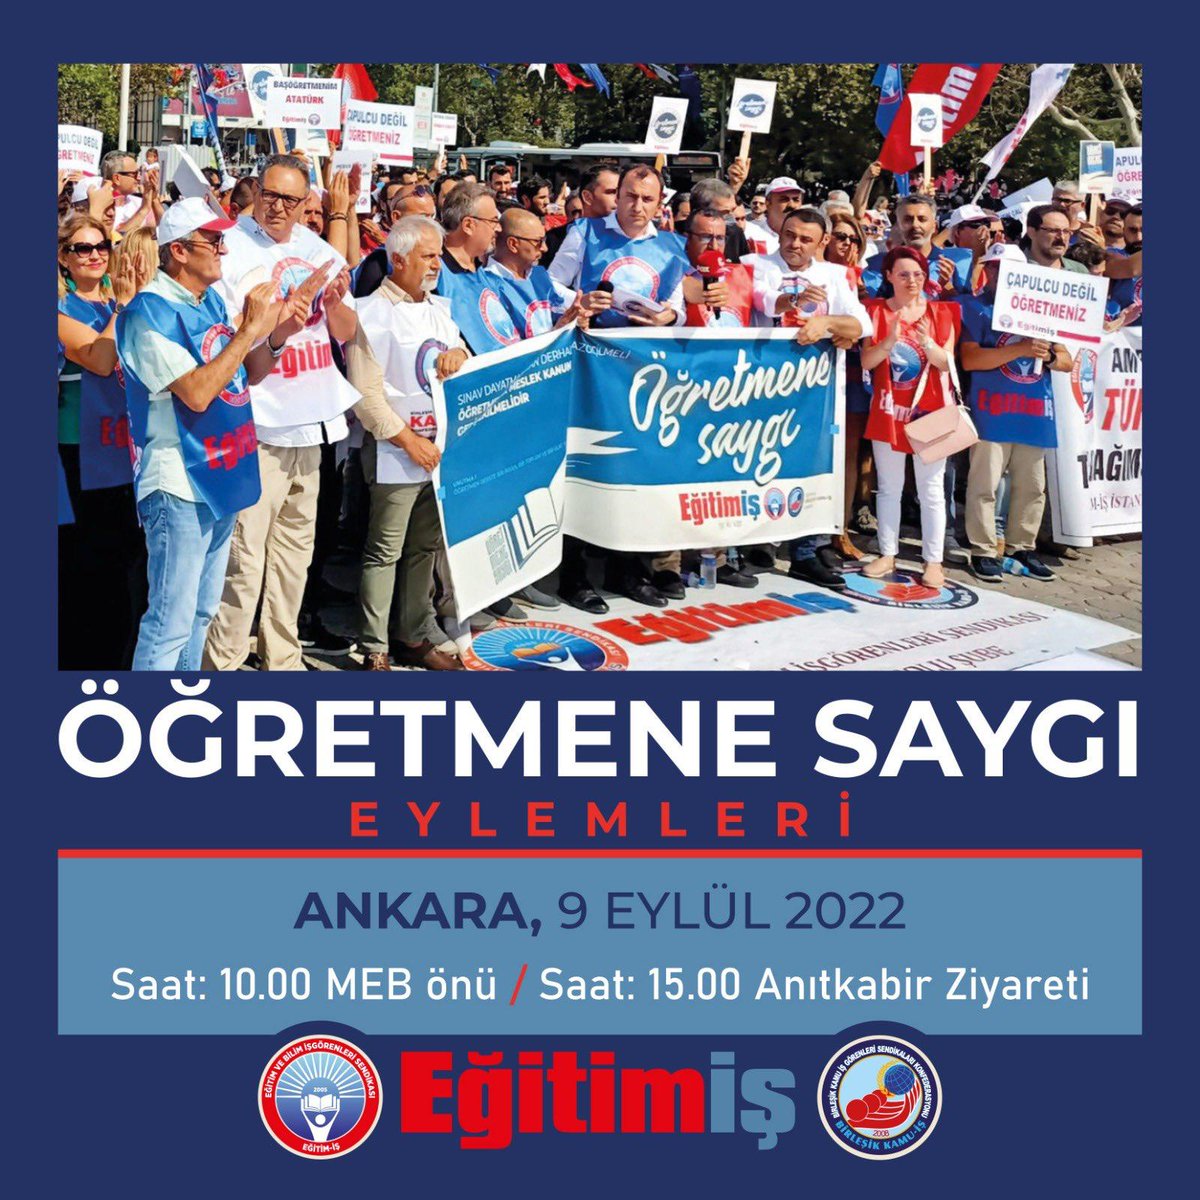 Yarın (9 Eylül Cuma) Ankara'dayız.
#öğretmenlervazgeçmeyecek
#yetkilisendikadanistifa
#öğretmençözümistiyor
#öğretmenesaygı
#öğretmenlersusmayacak demek için...
Korkma, Eğitim-İş var!